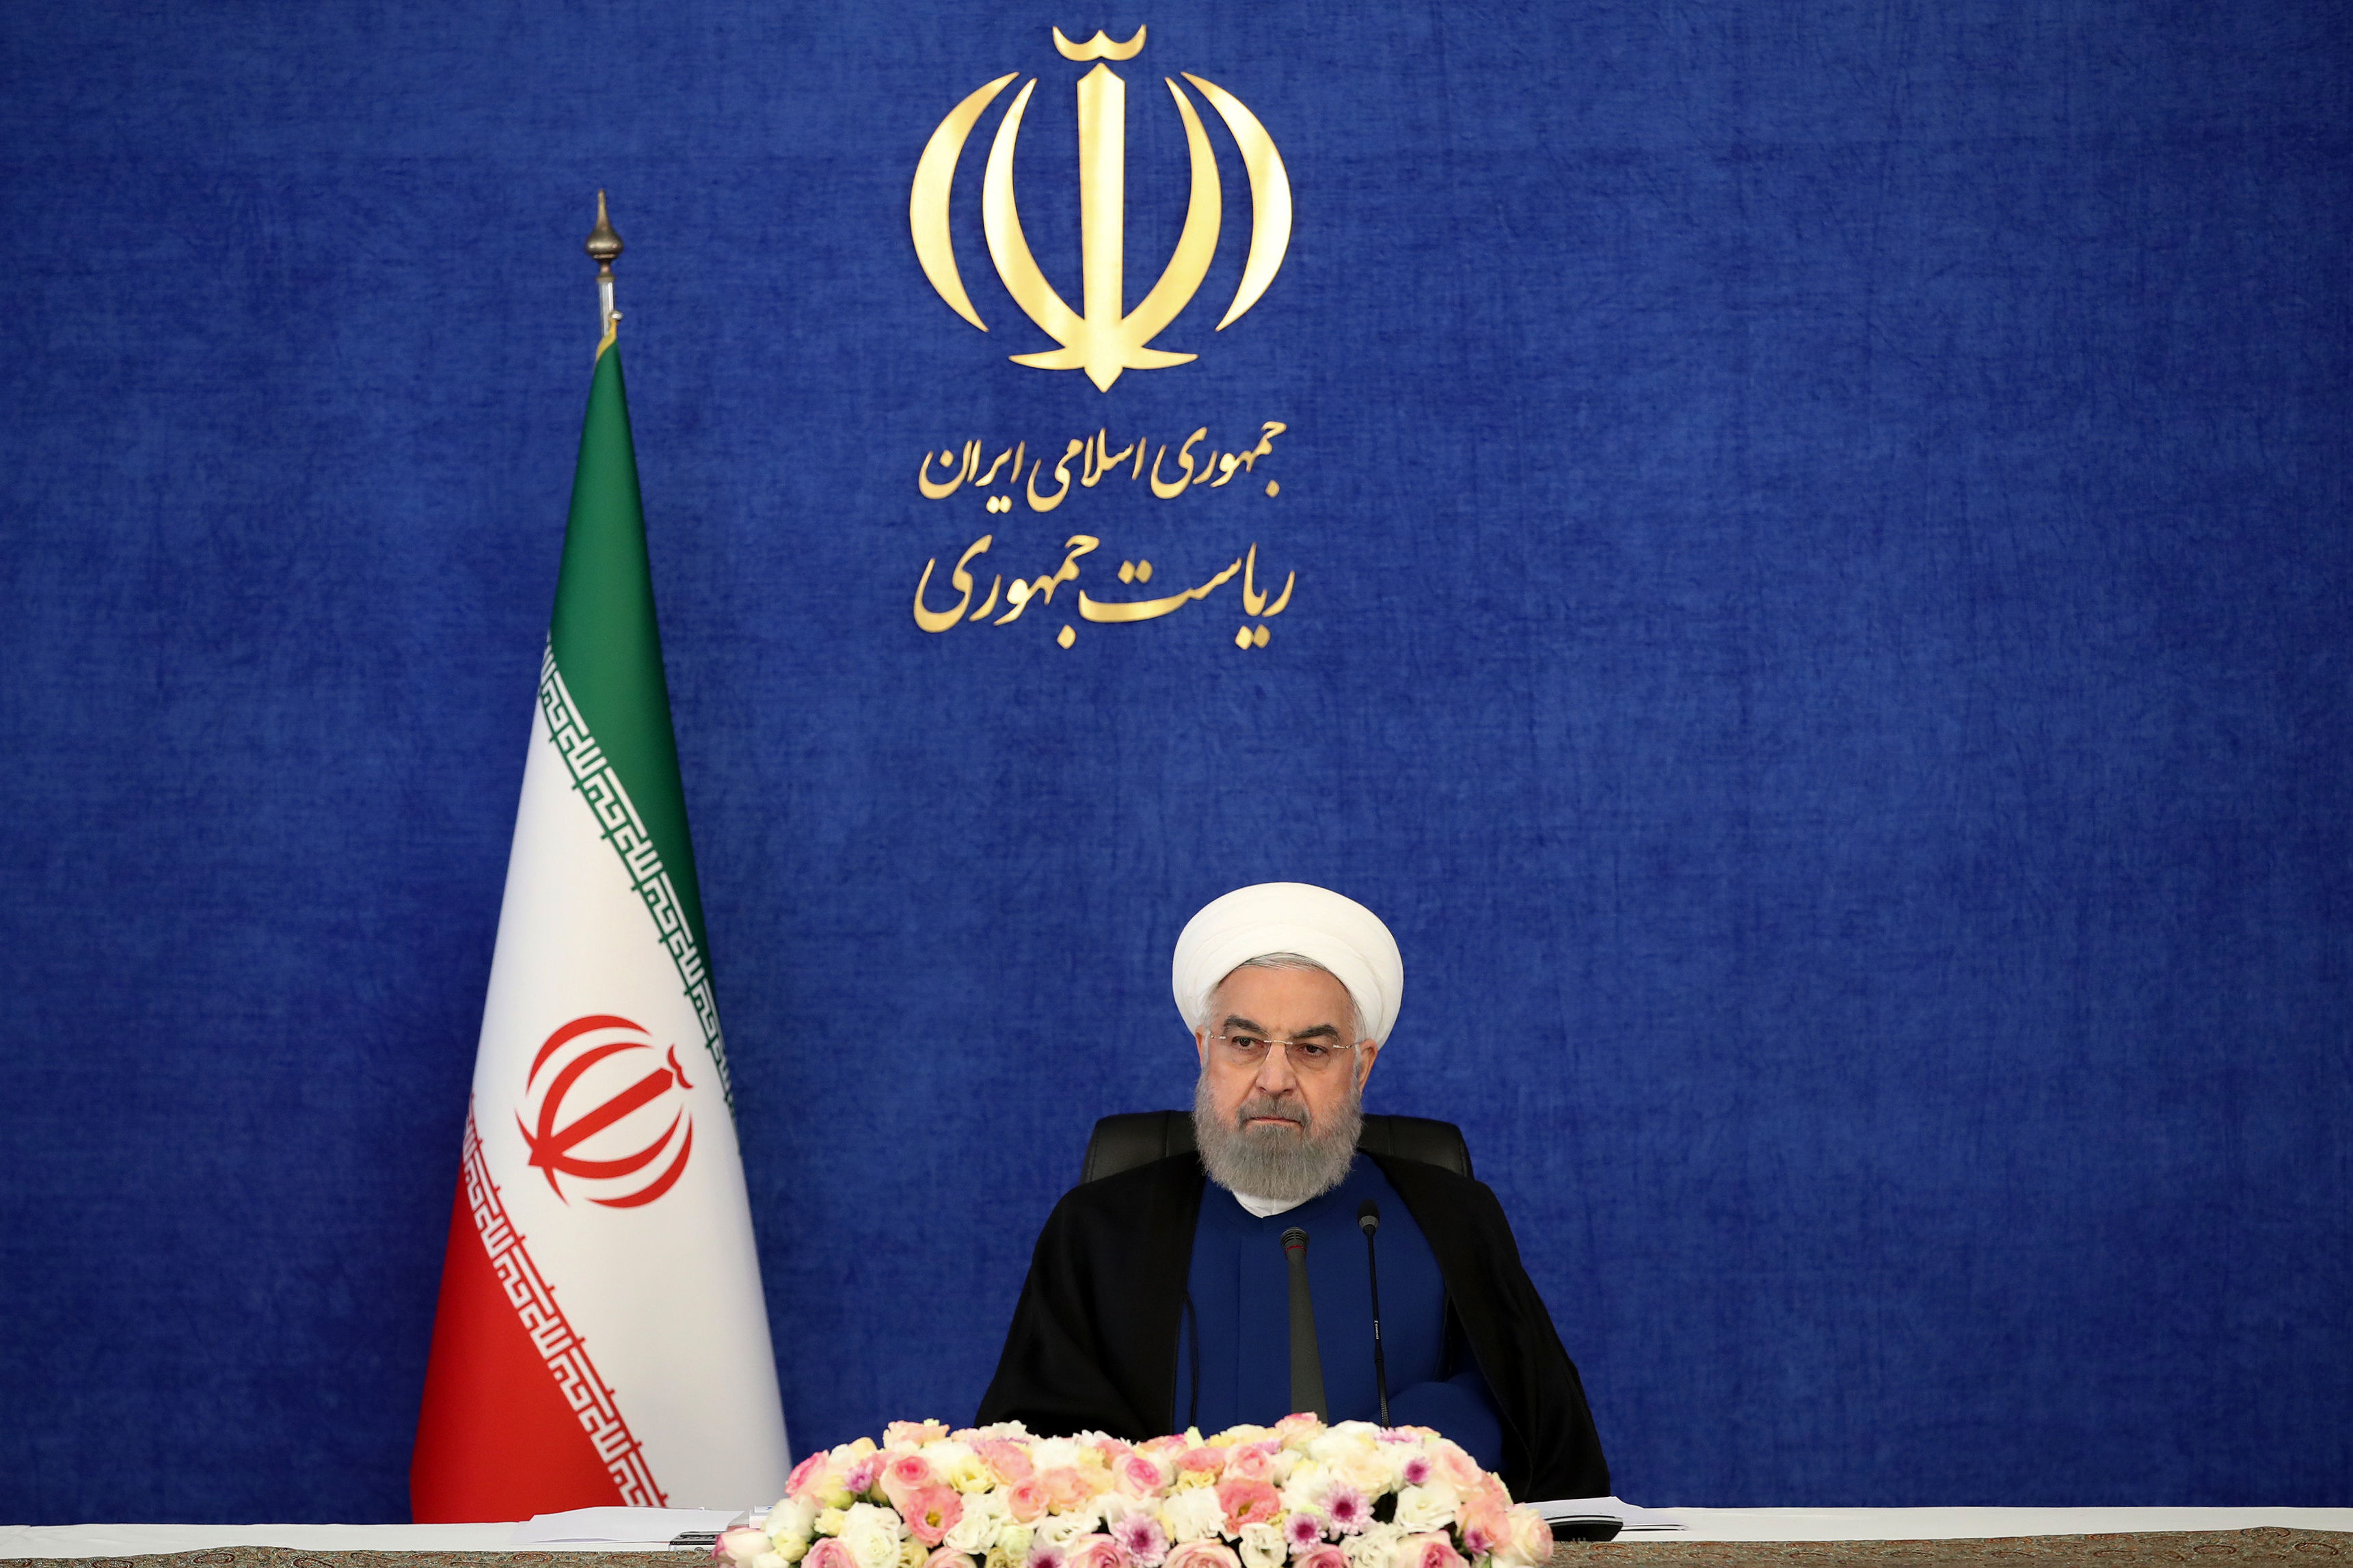 روحانی: وزرای من در ستاد رقیب بودند+ فیلم